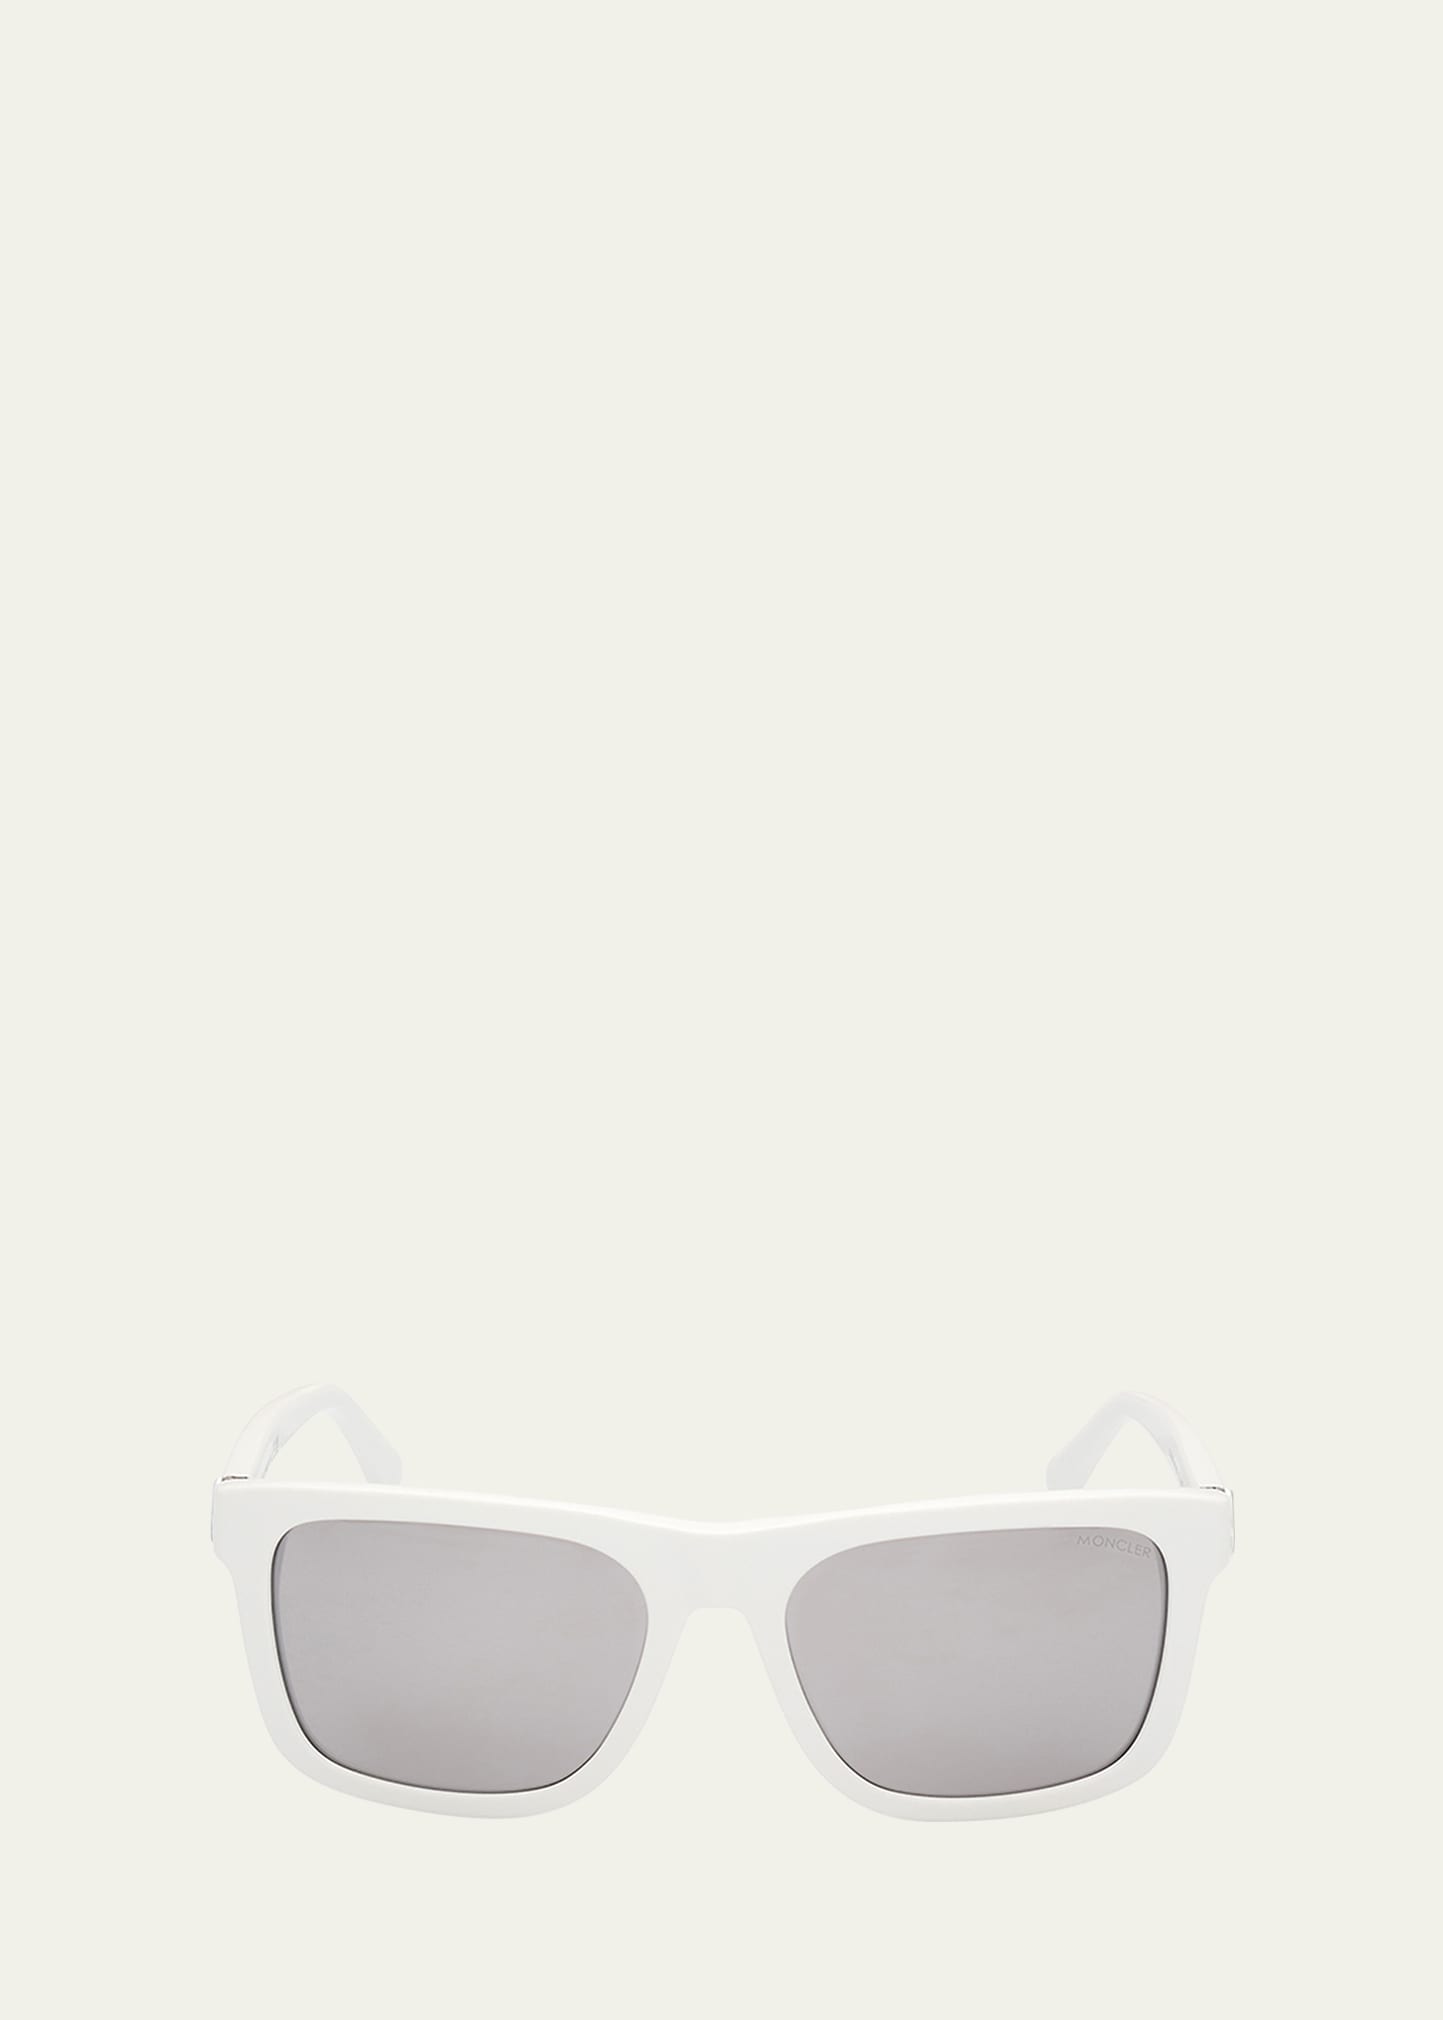 Moncler Men's Colada Acetate Square Sunglasses In White Smoke Mirro